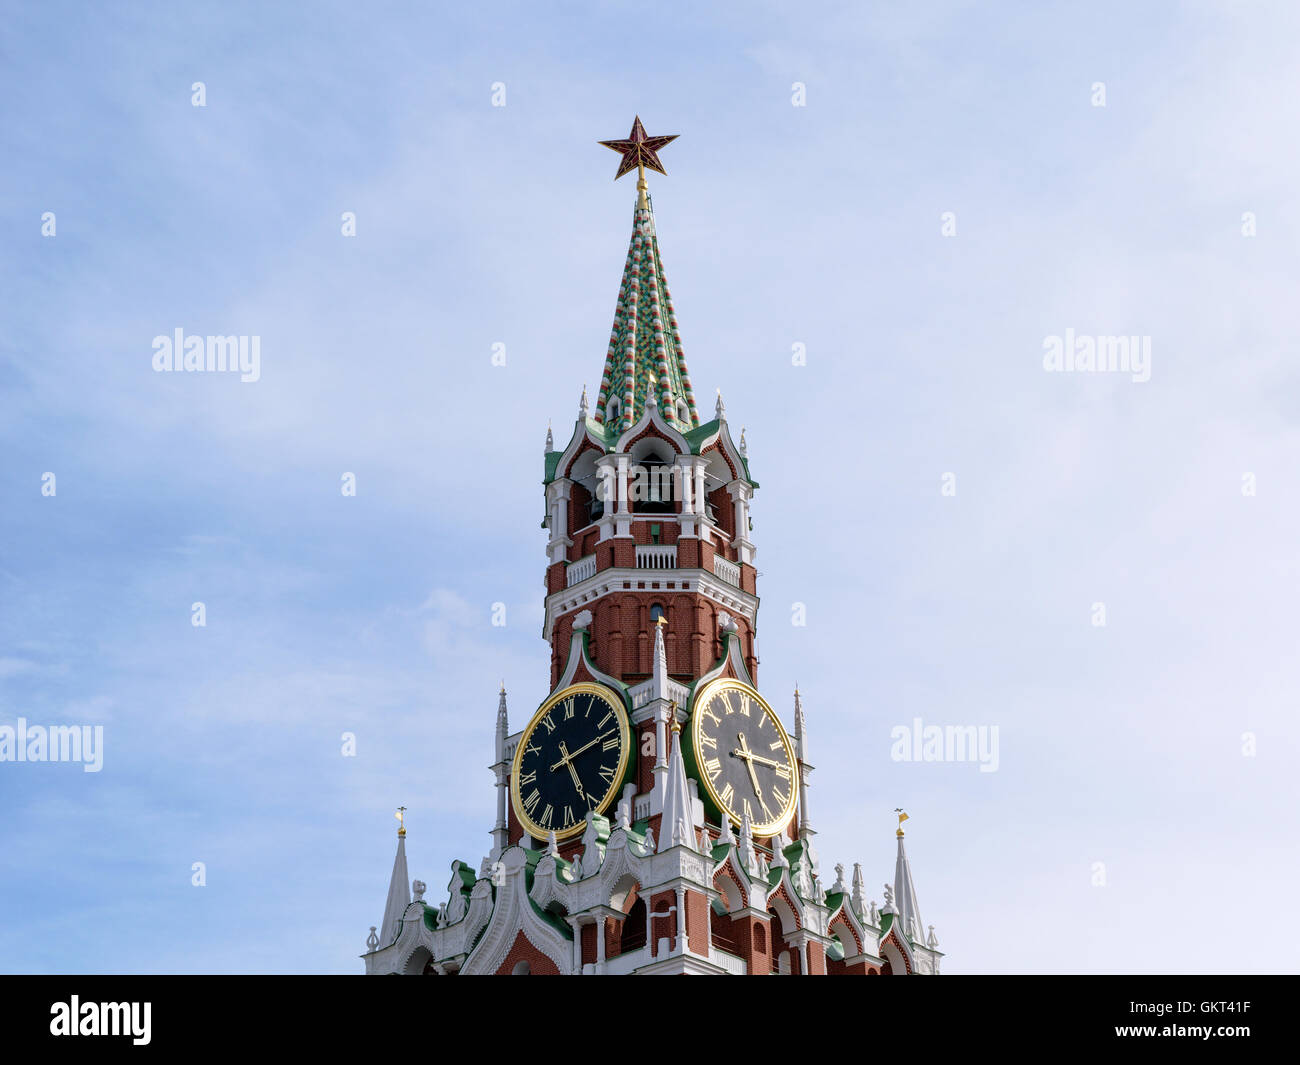 Moskau, Russland - 7. Juli 2016: Glockenspiel und Courant (große Uhr) auf den Spasski Turm des Kreml Stockfoto